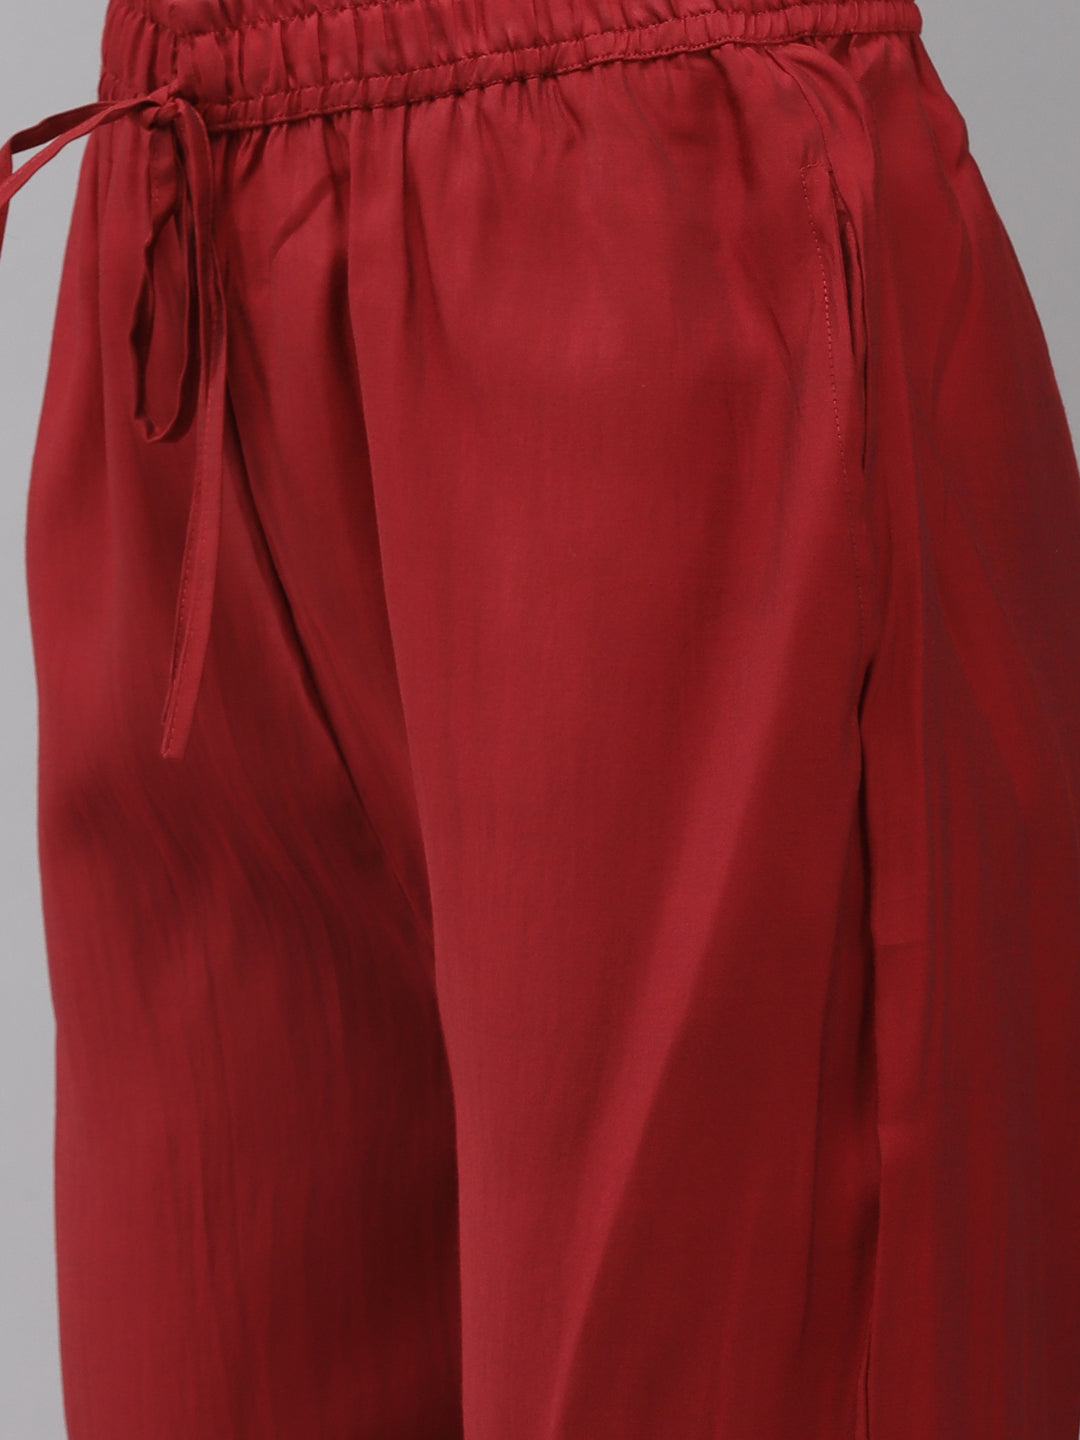 Ishin Women's Silk Blend Red Embroidered A-Line Kurta Trouser Dupatta Set